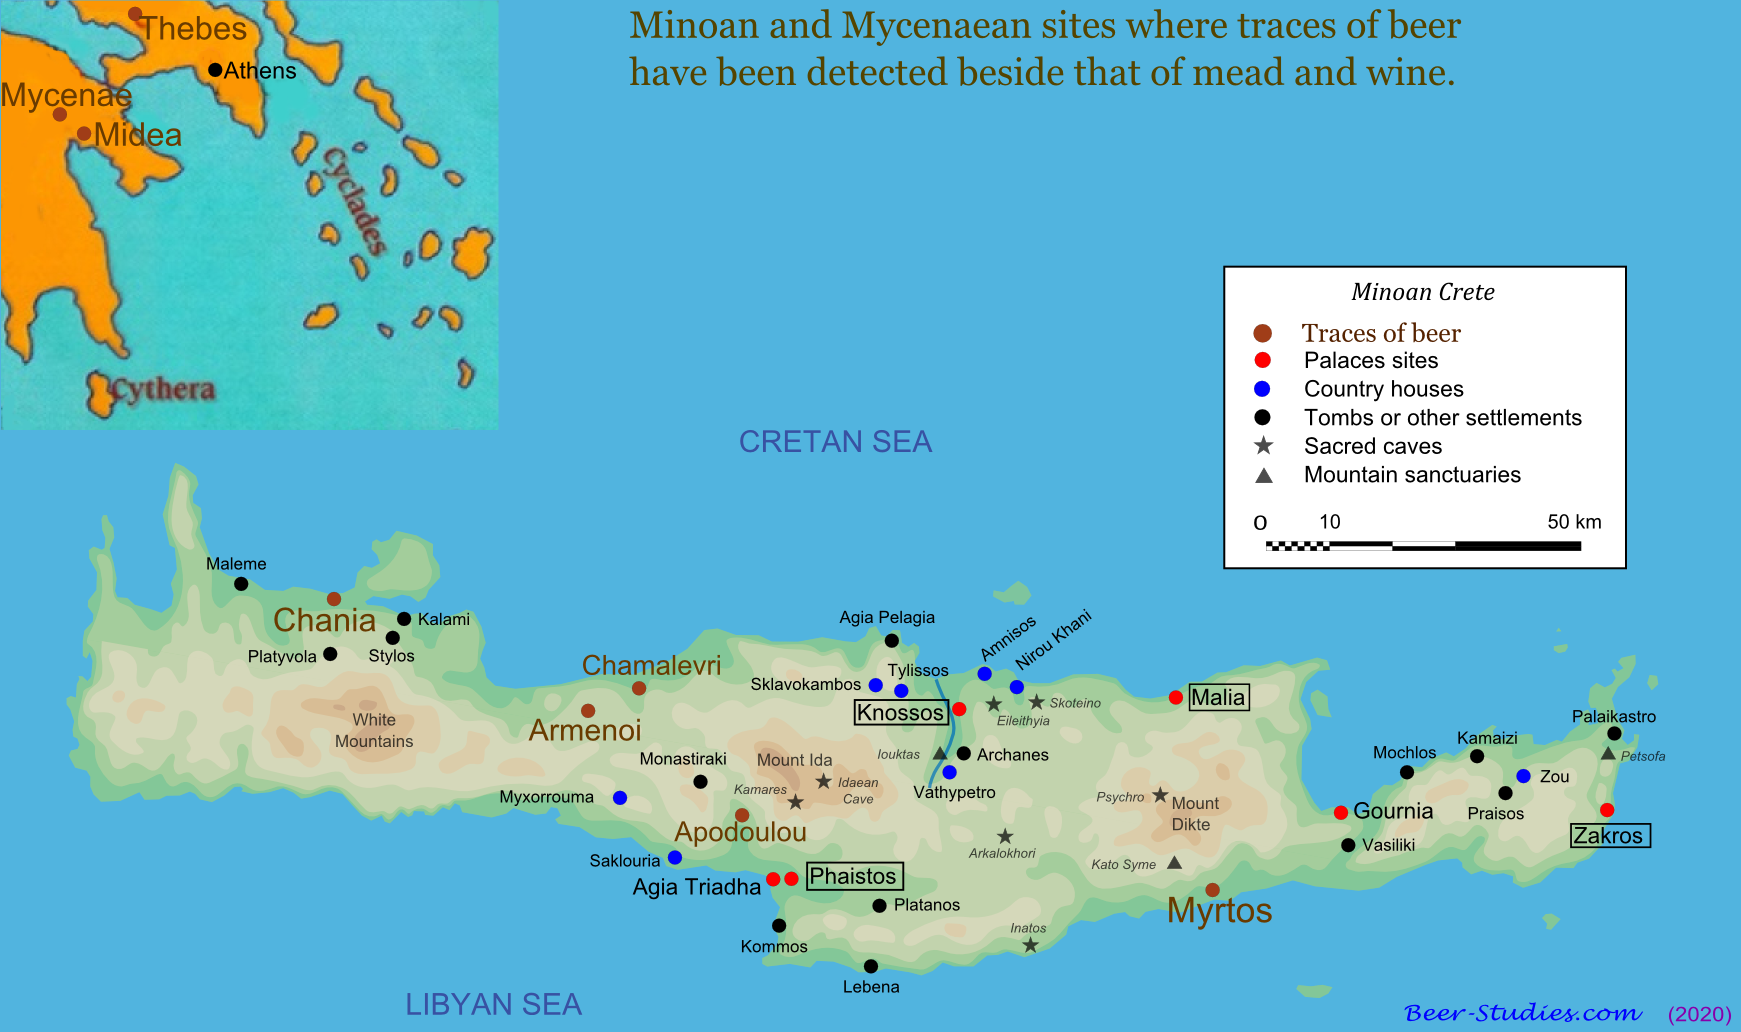 Sites minoens et mycéniens où des traces de bière ont été détectées